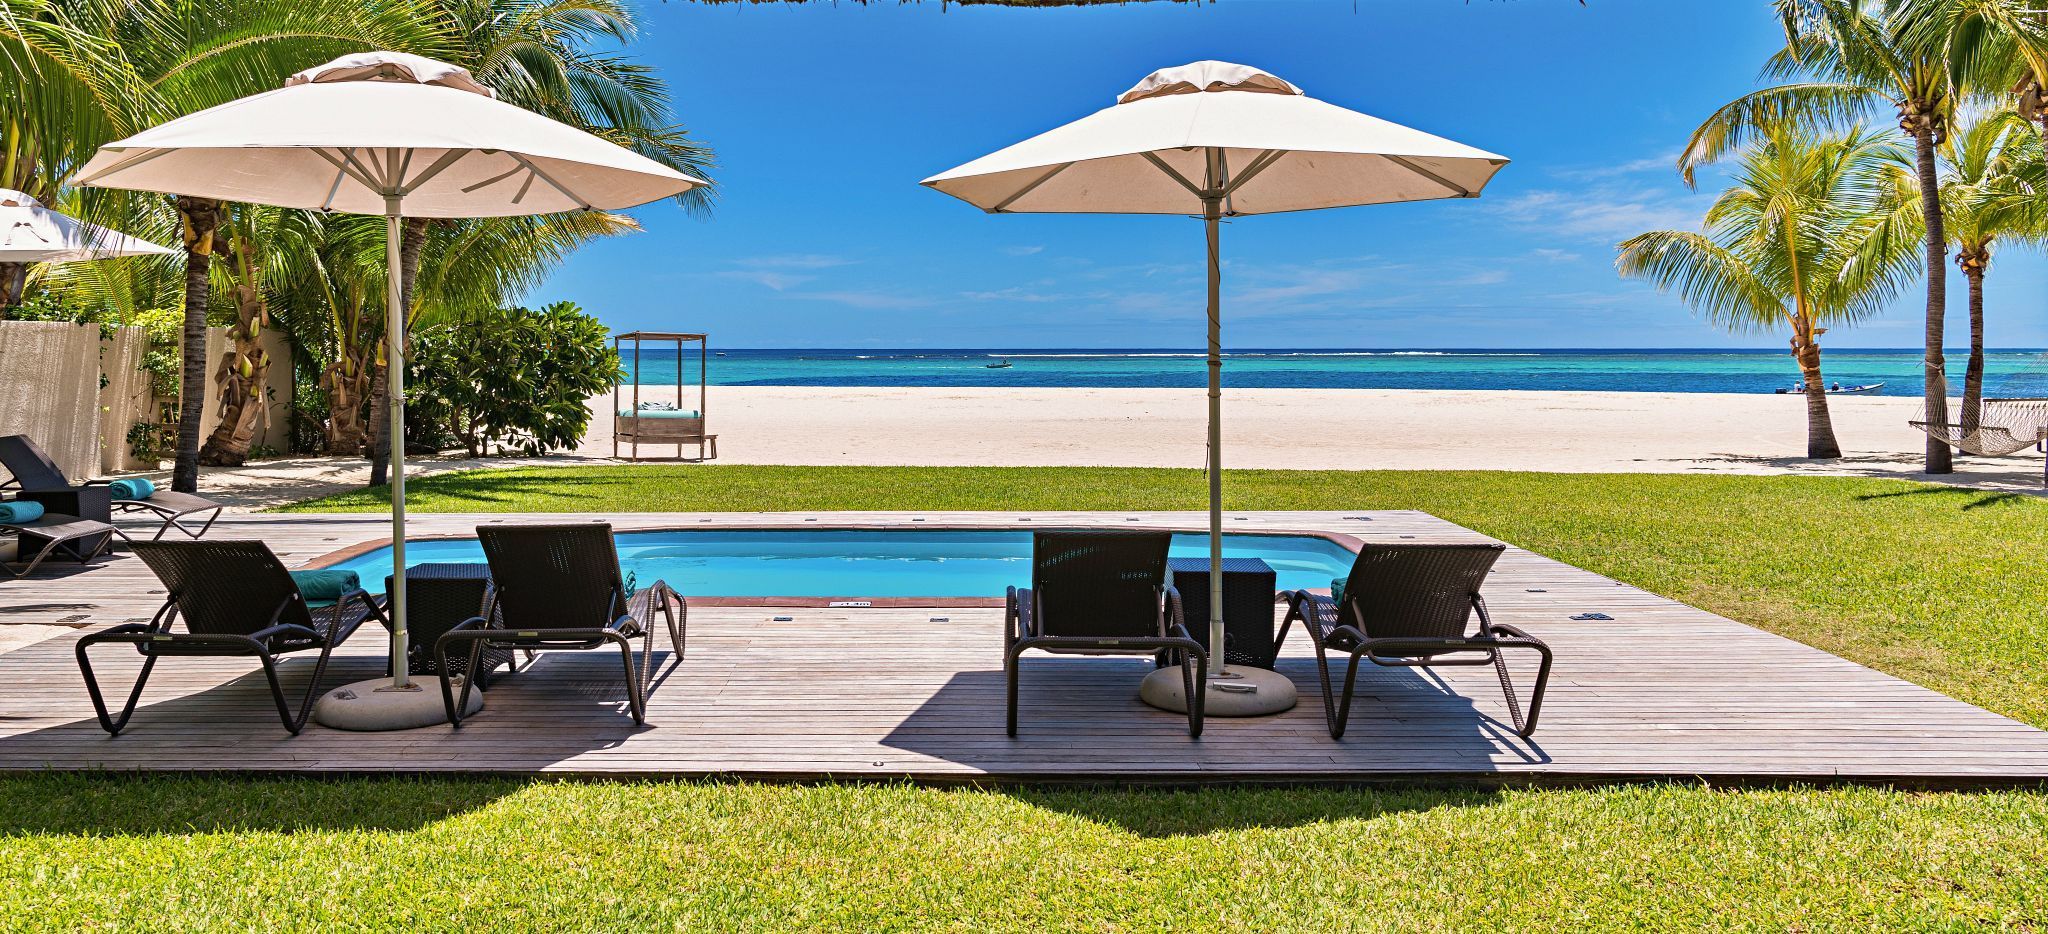 Strandliegen an einem privatem Pool im Hotel Beachcomber Dinarobin, Mauritius